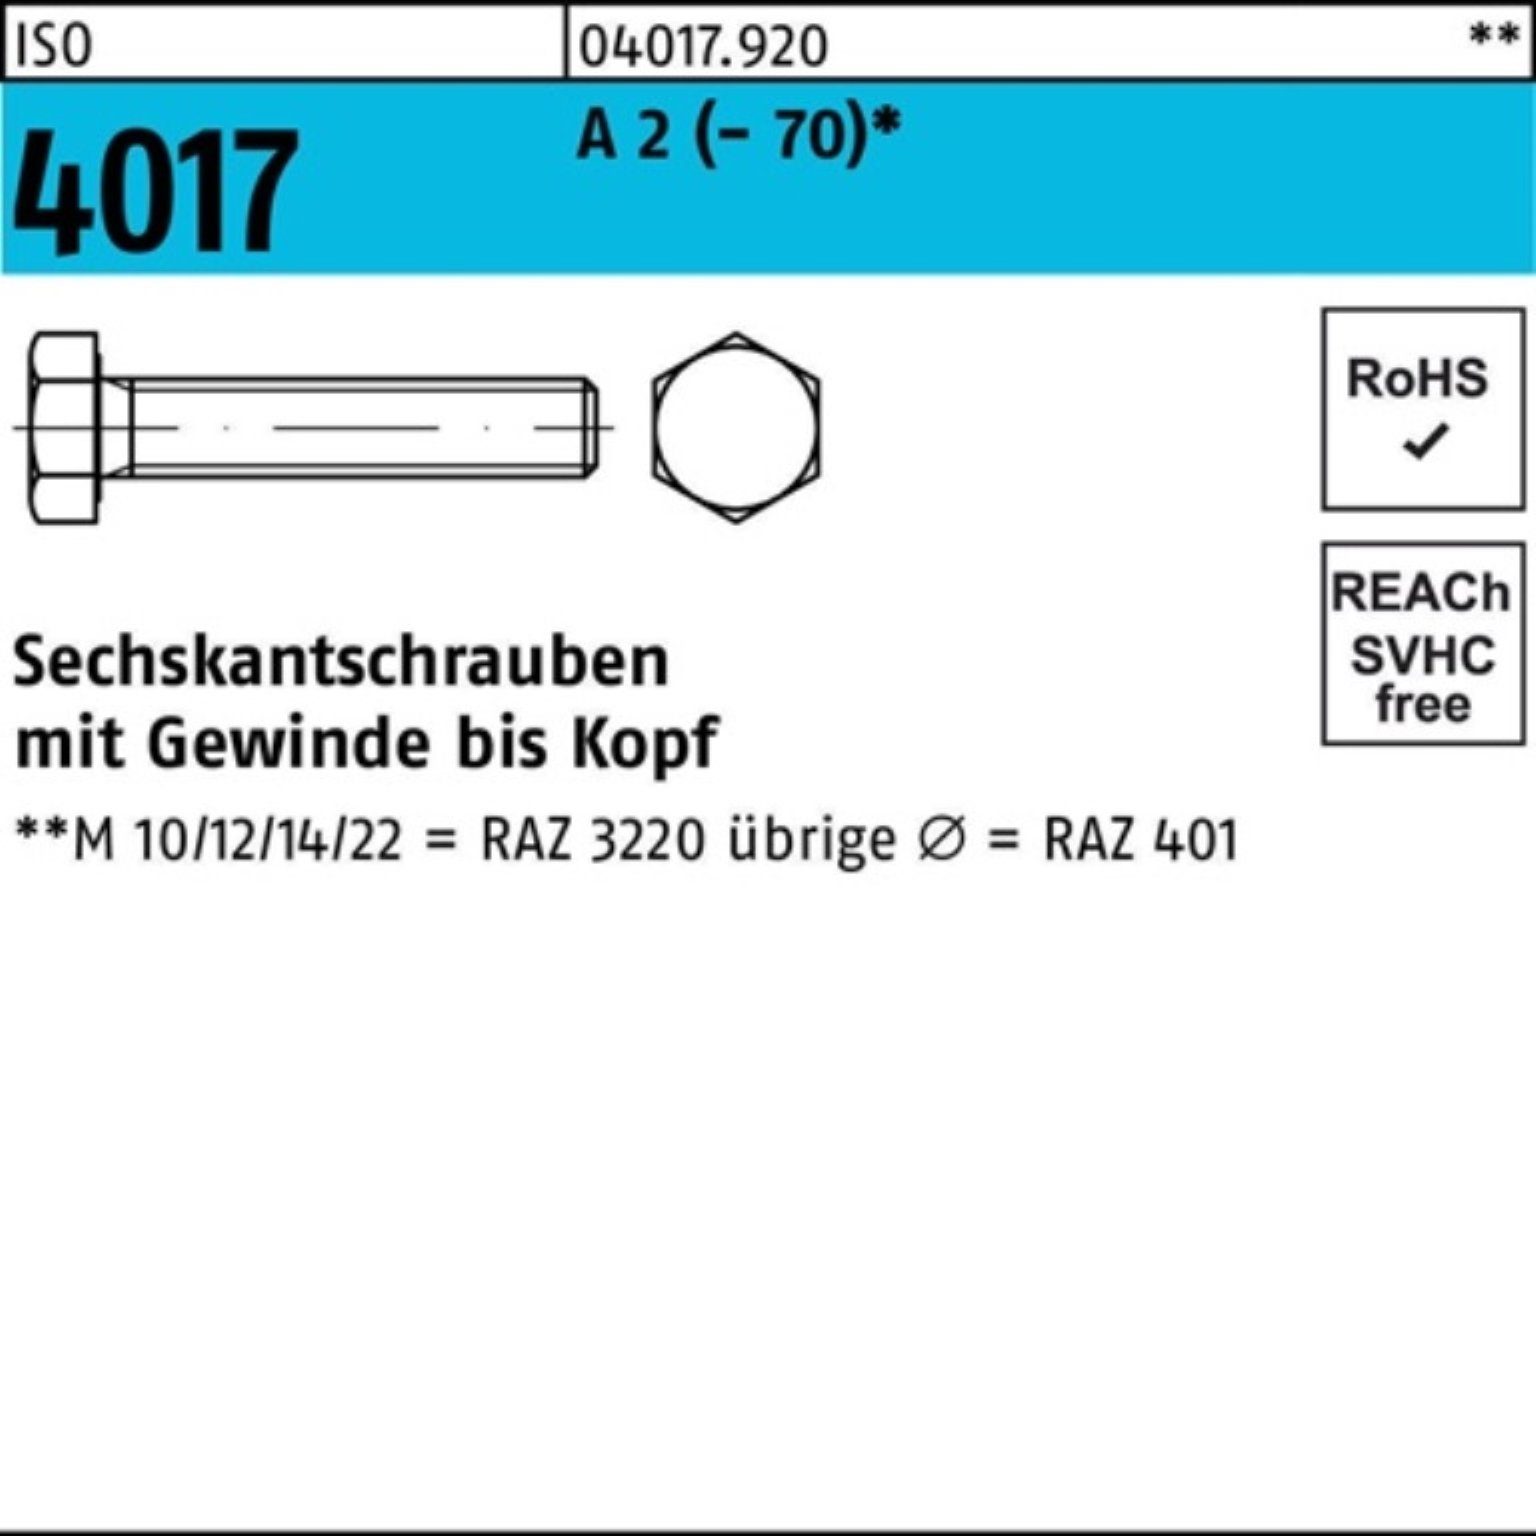 Sechskantschraube Bufab A Stück 45 M5x 200 4017 (70) 200er 2 Pack Sechskantschraube ISO VG